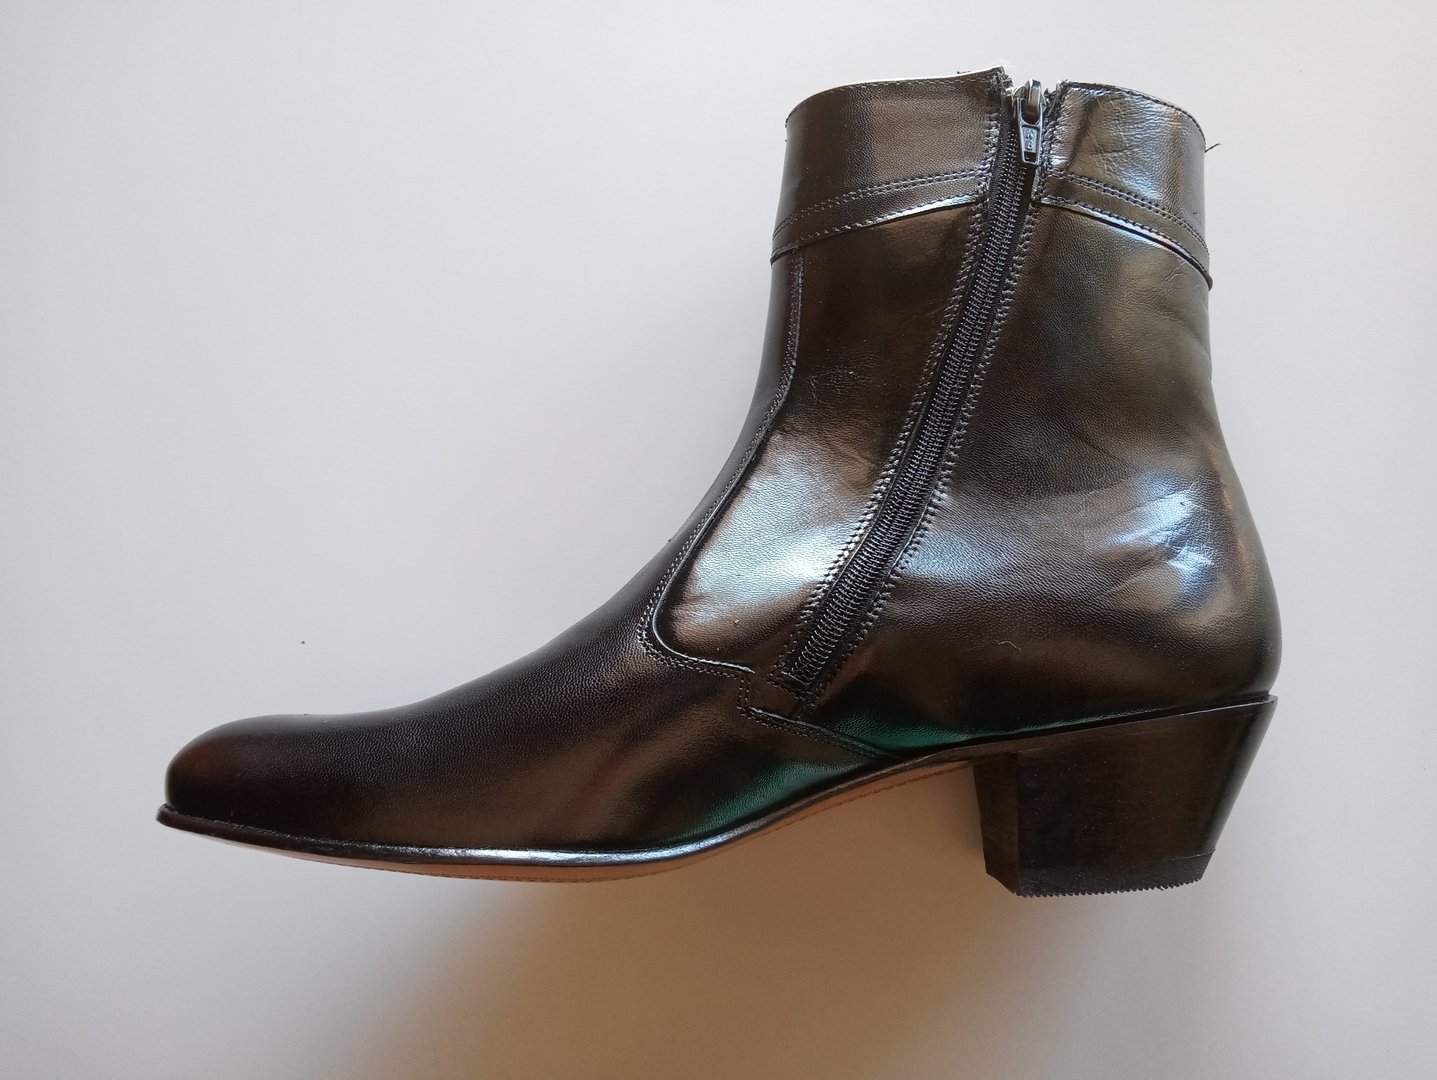 New Men's Maximus #6456 cuban heel boots with inside zipper